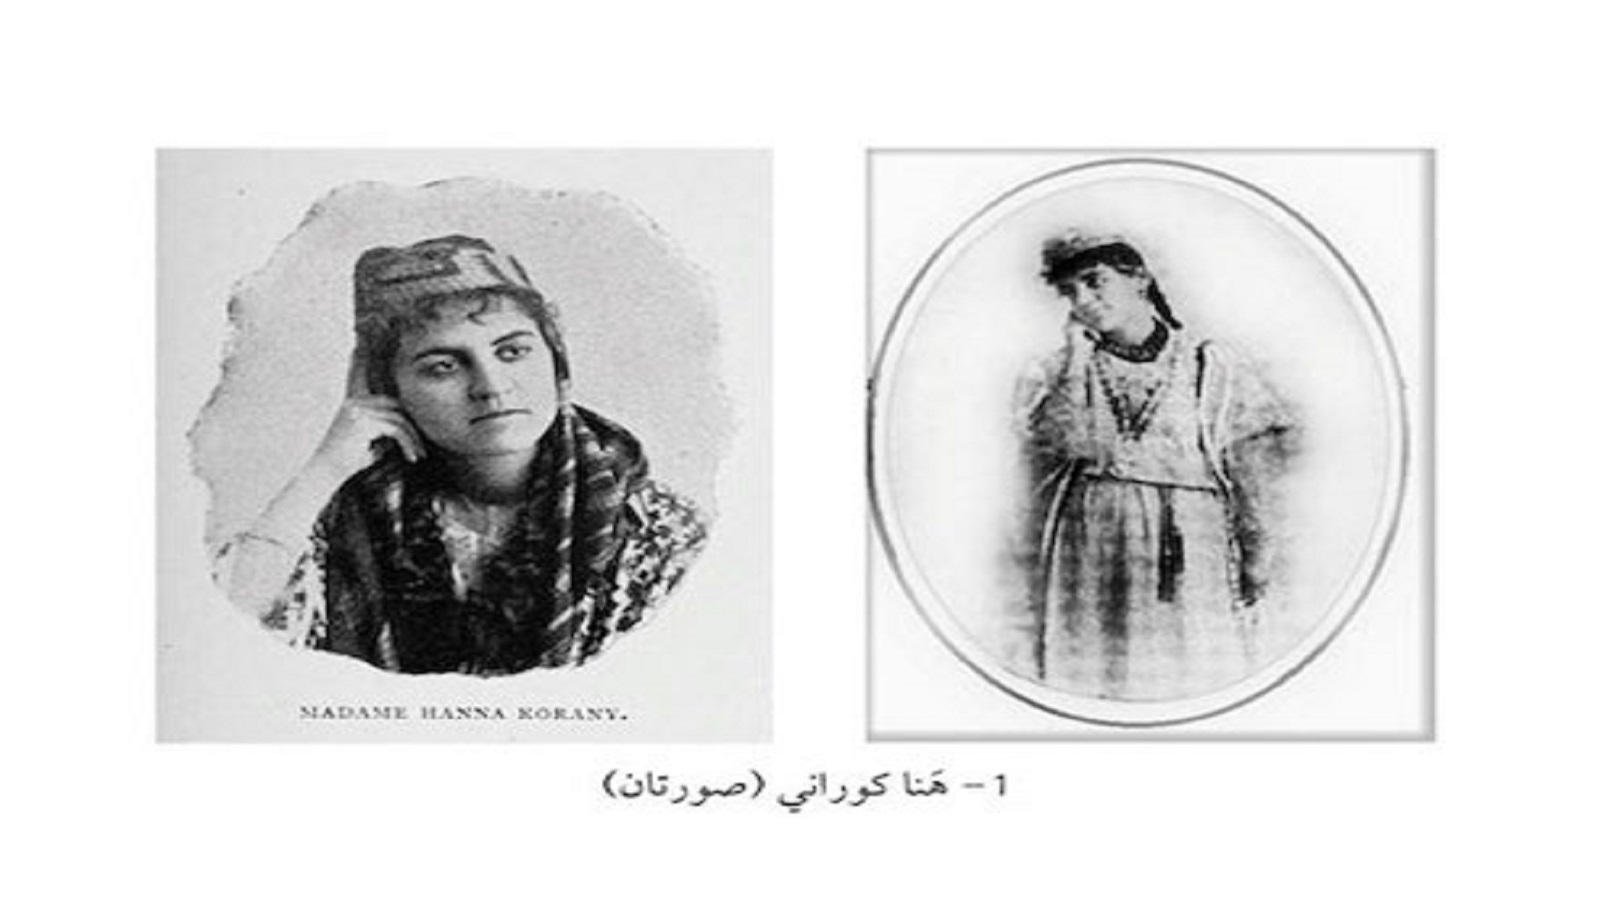 الحركة النسائية المبكرة في سوريا العثمانية: تجربة هنا كوراني